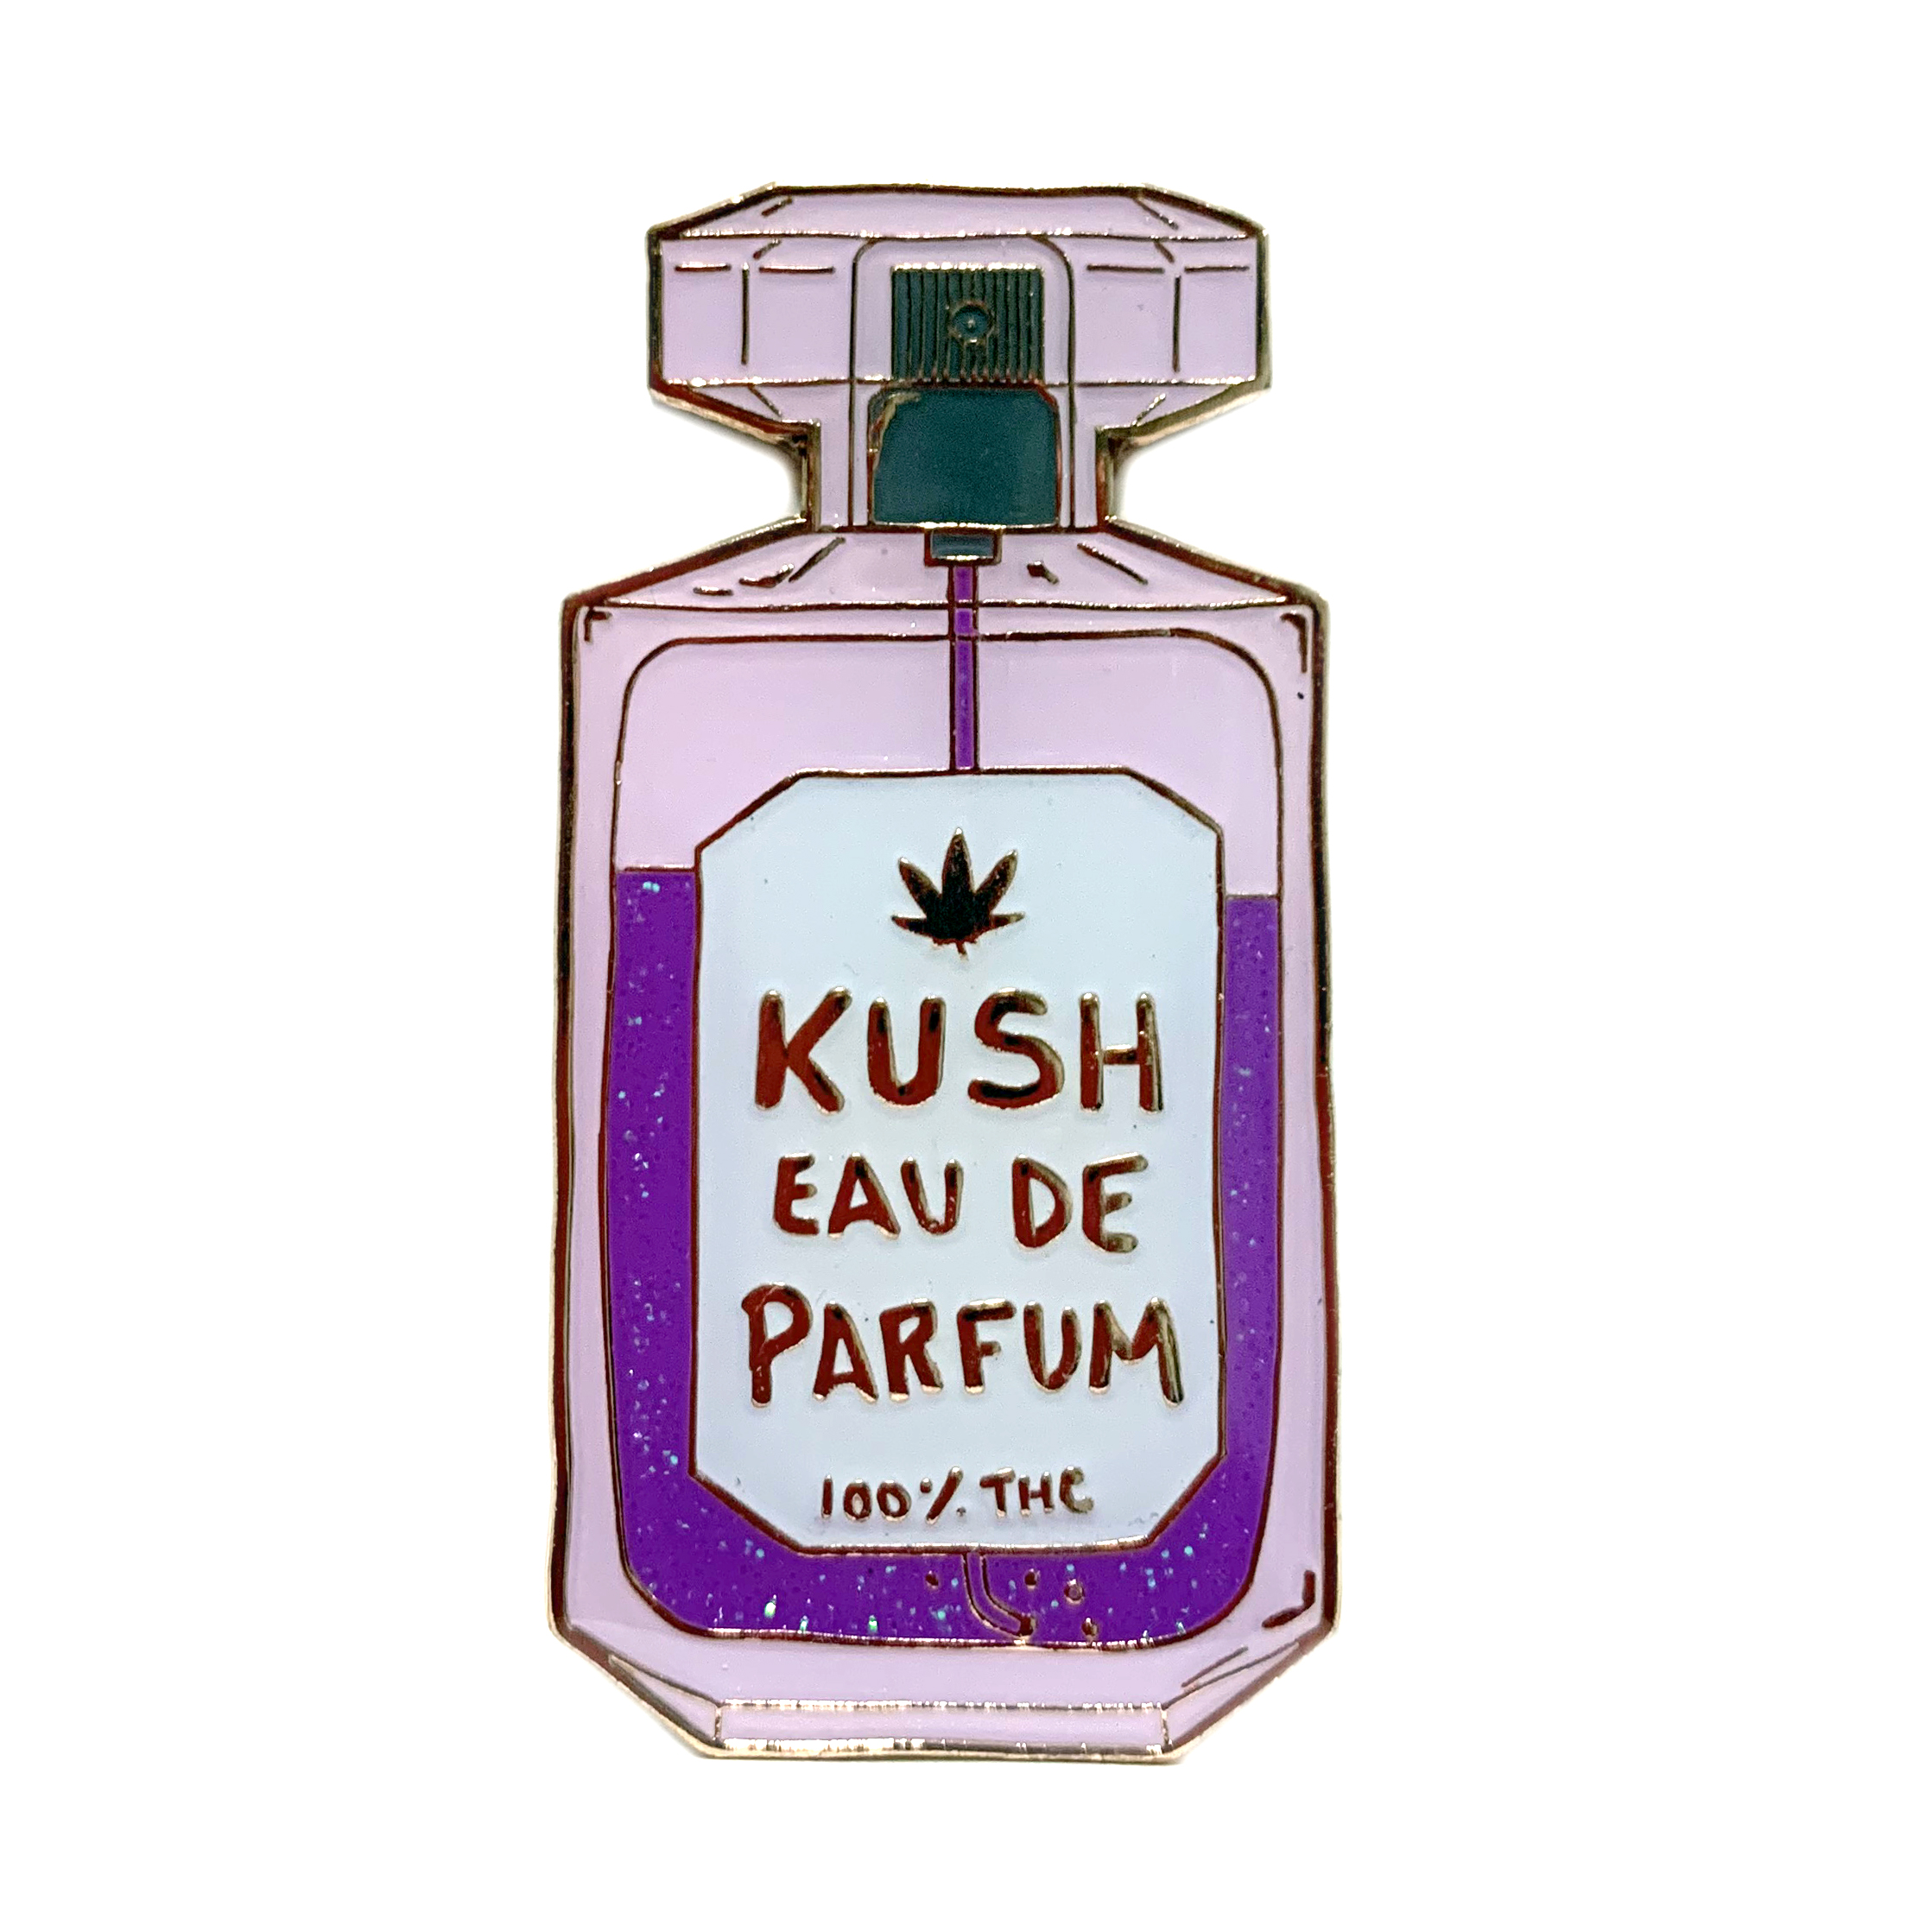 kush eau de parfum_hat pin_purps1